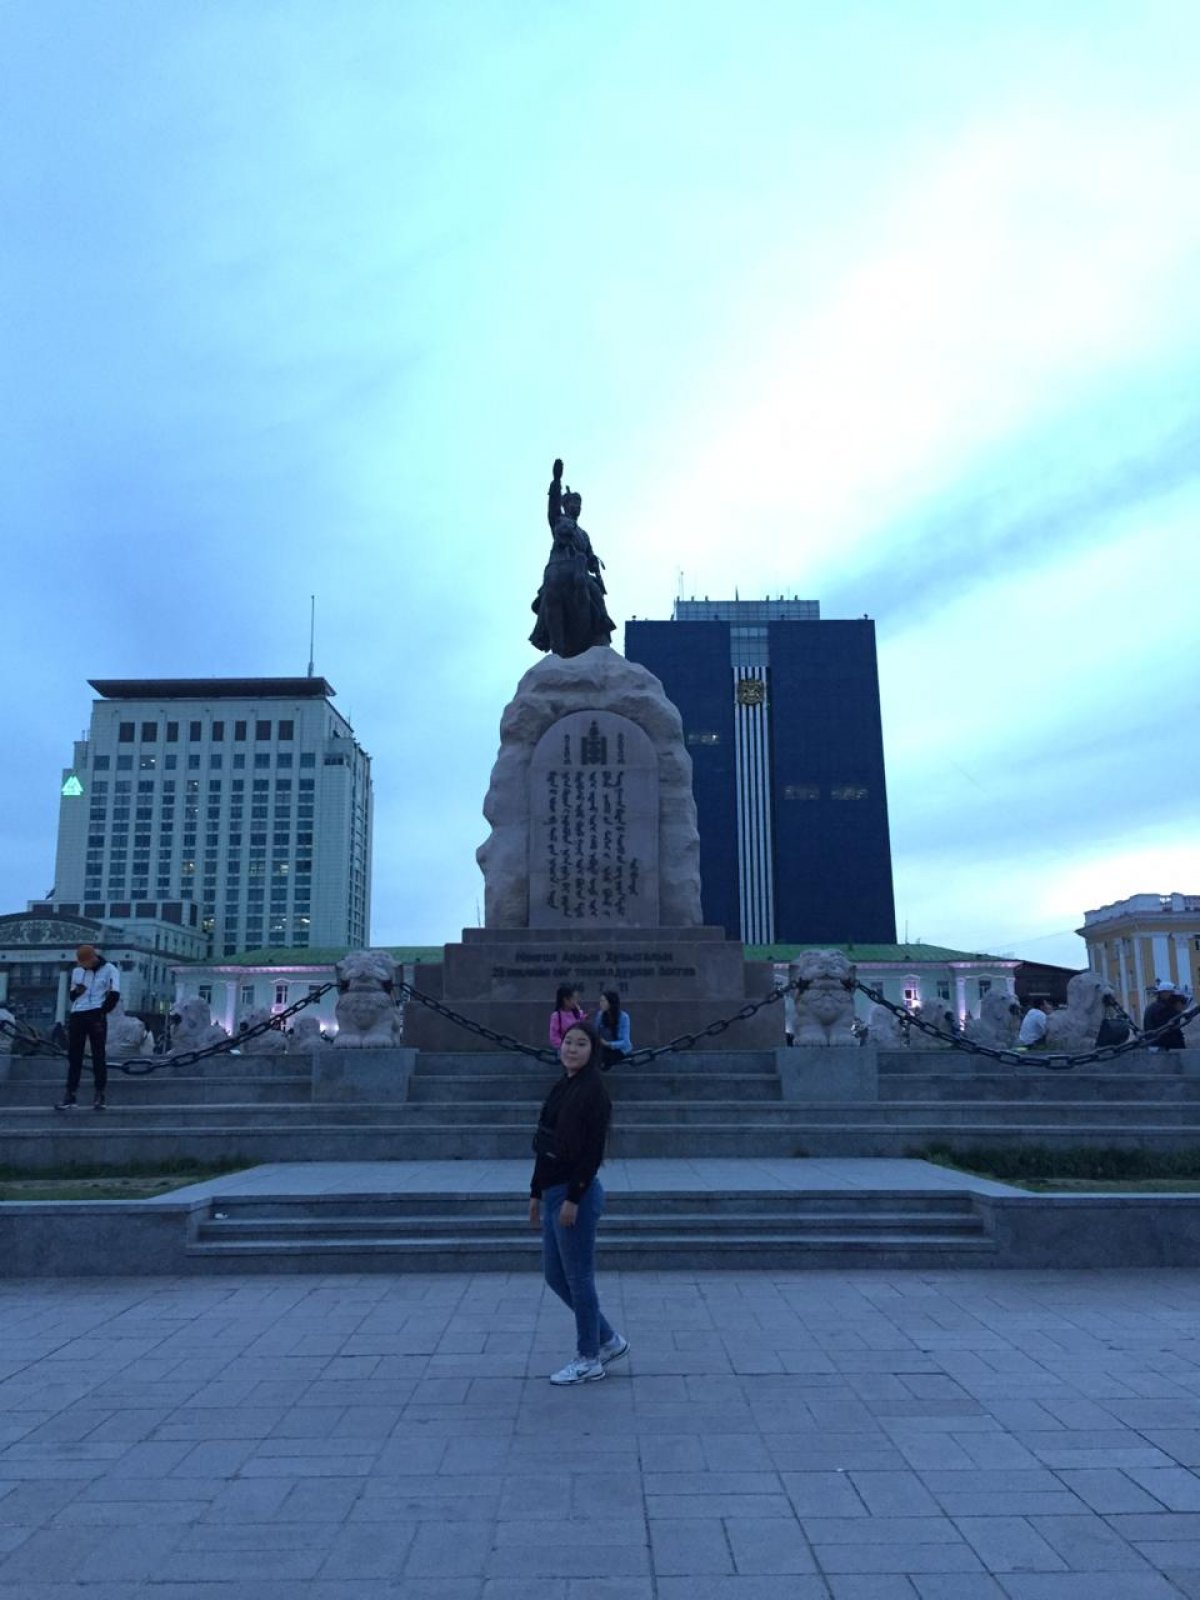 Наша студентка уже месяц учится в Монголии! Паша Лебедева, студентка II курса кафедры НХК, передает всем большой привет и делится своими впечатлениями: